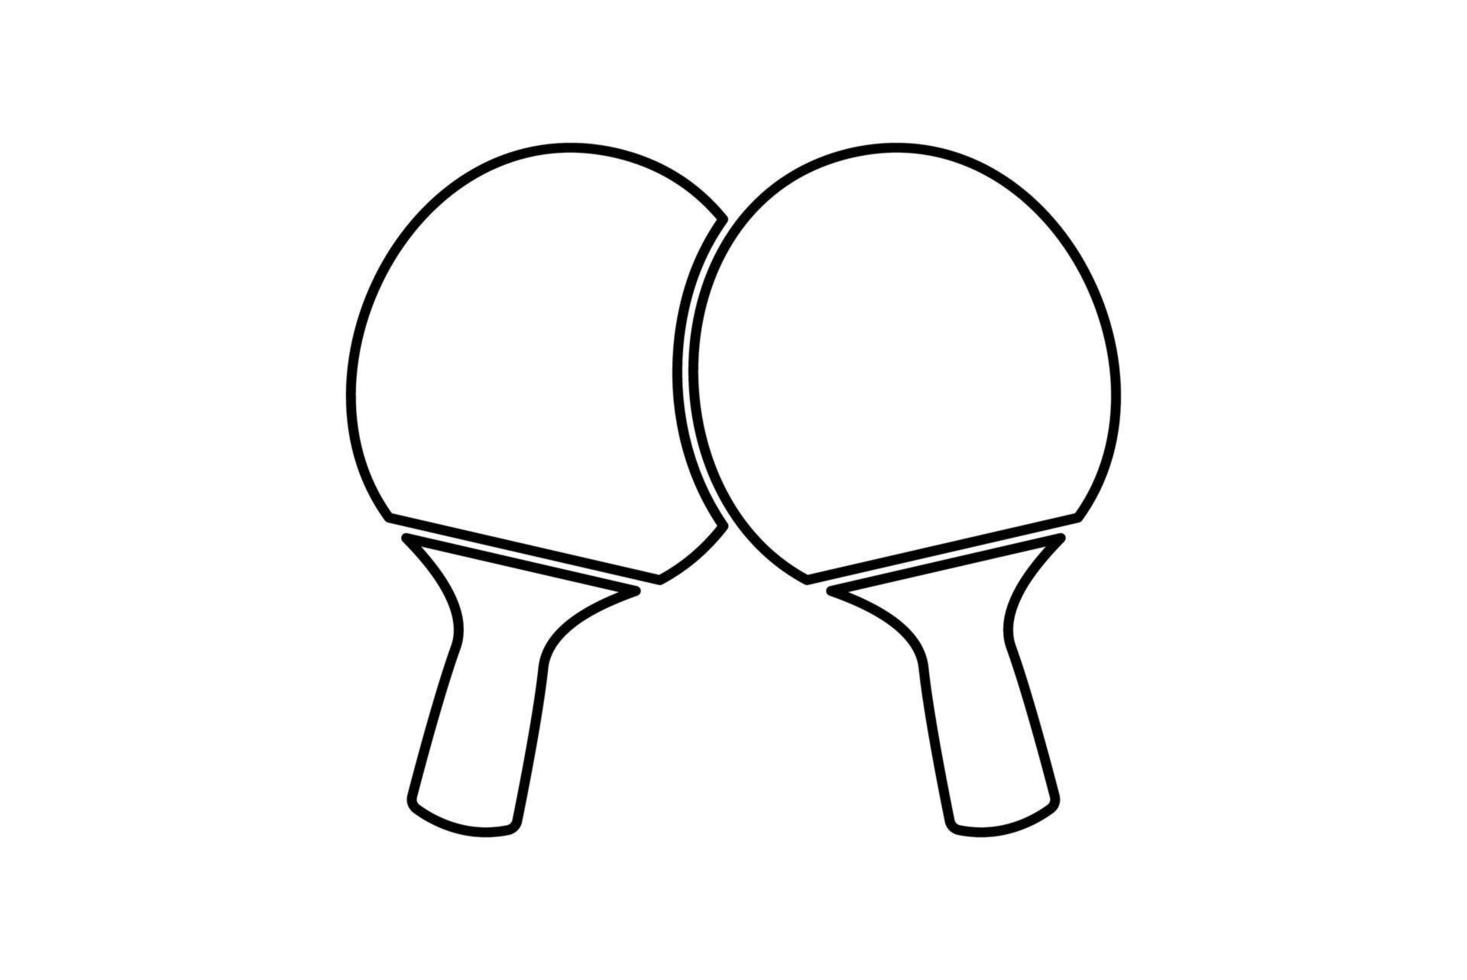 icono de la raqueta de ping pong. dos raquetas de ping pong cruzadas. icono de línea blanca y negra de tenis de mesa vector